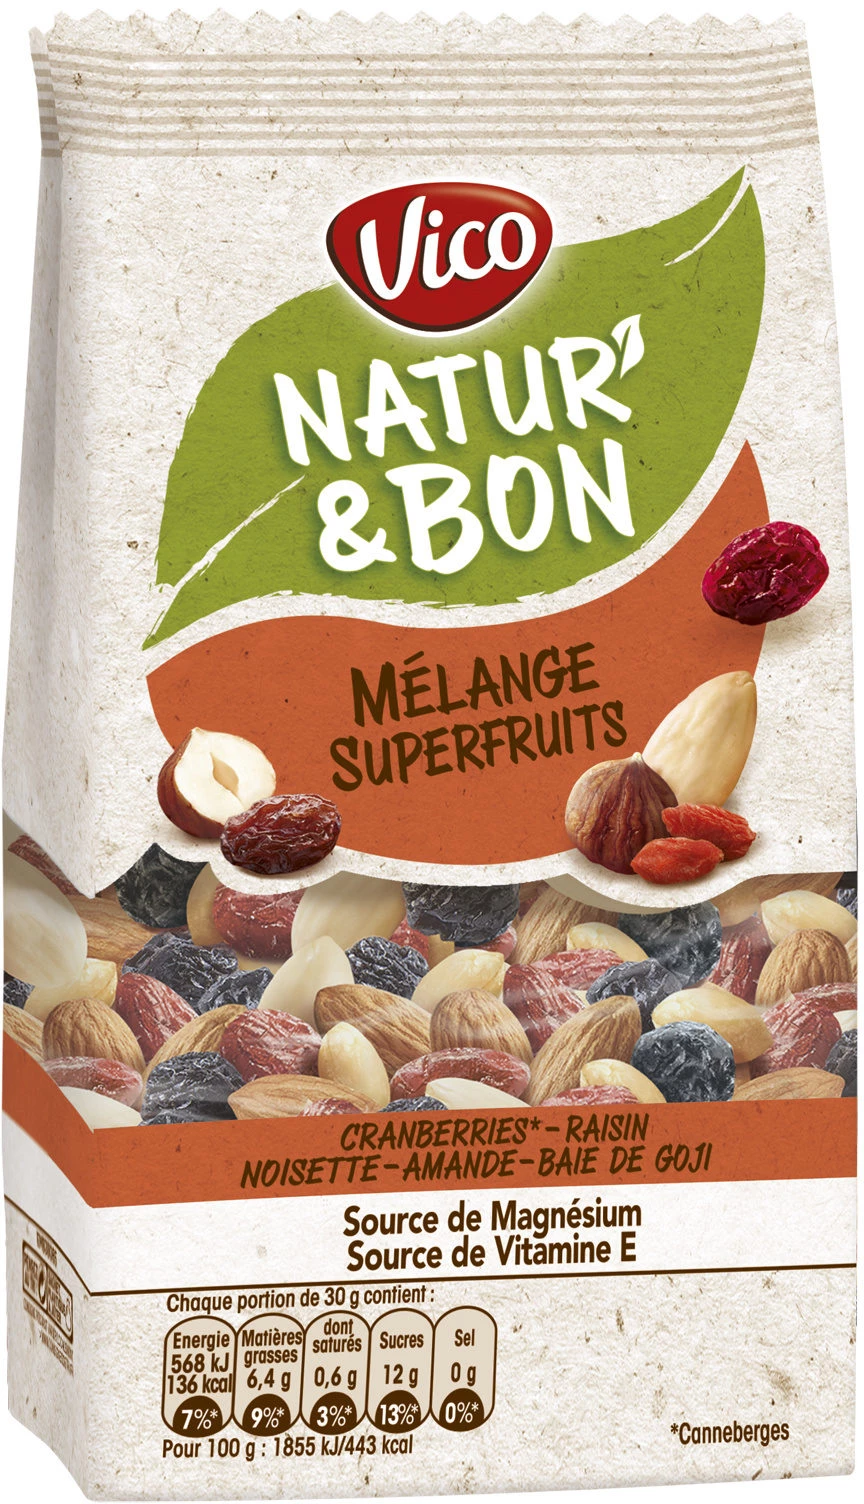 Mélange superfruit 200g - NATUR' & BON